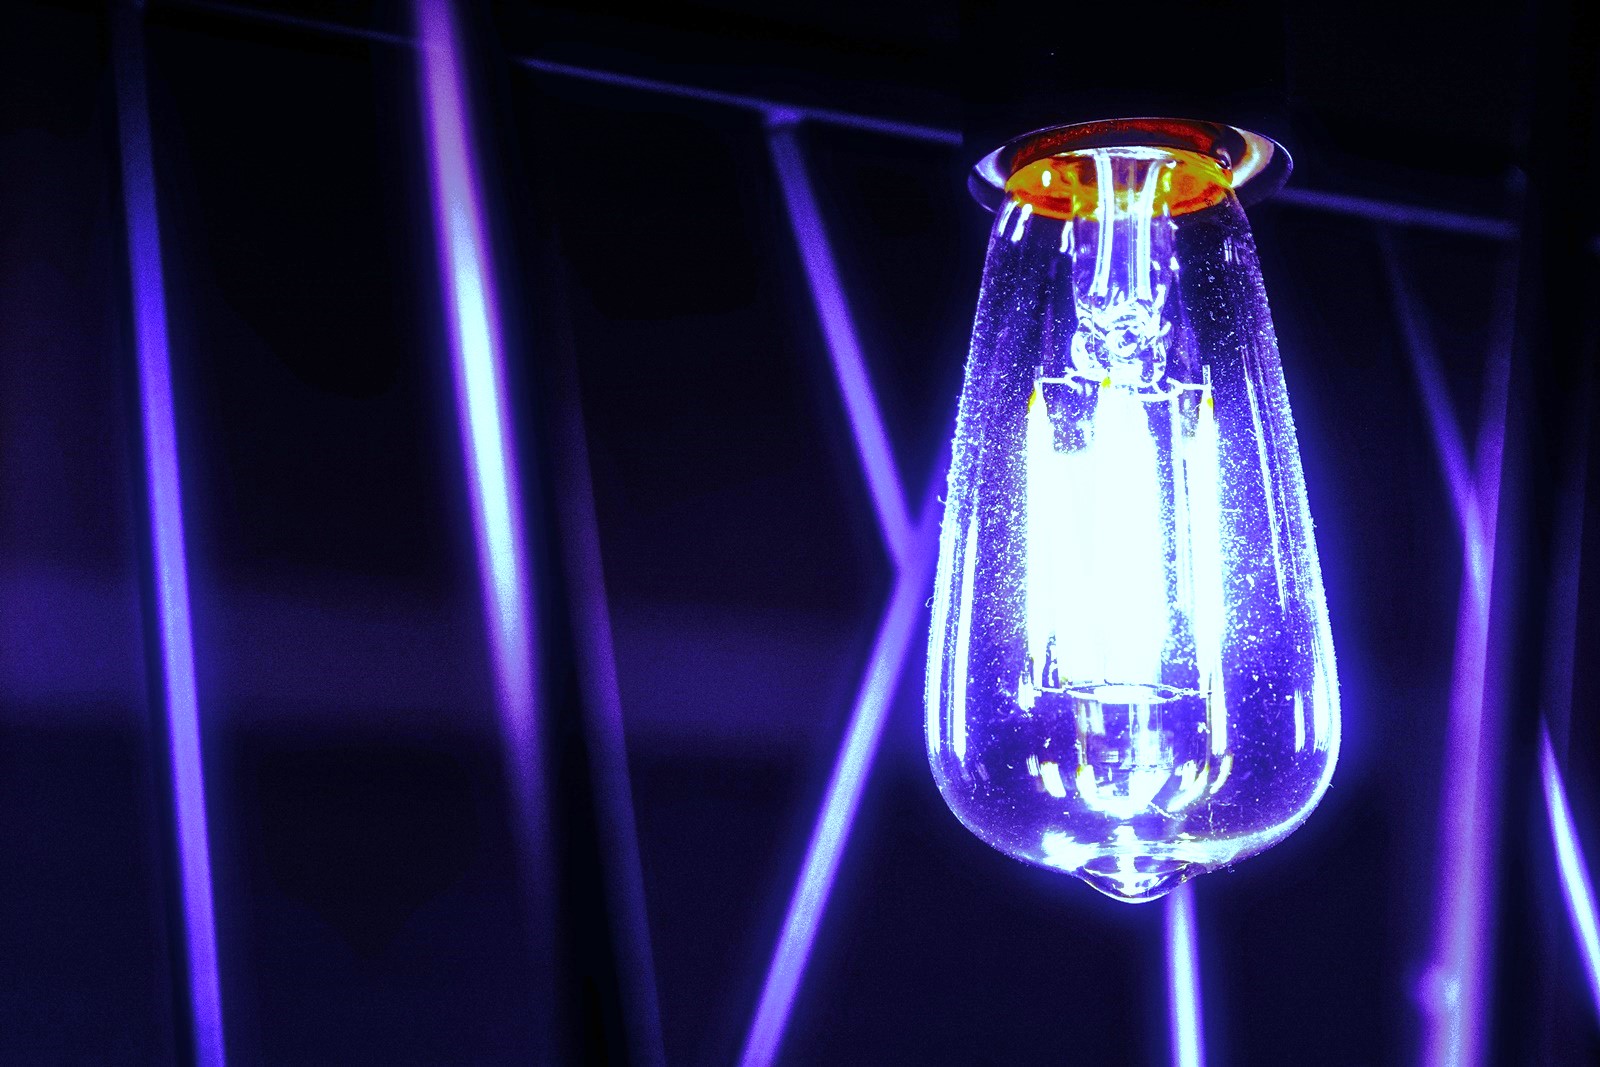 Δήμος Ζωγράφου LED: Εξοικονόμηση ενέργειας με νέο φωτισμό